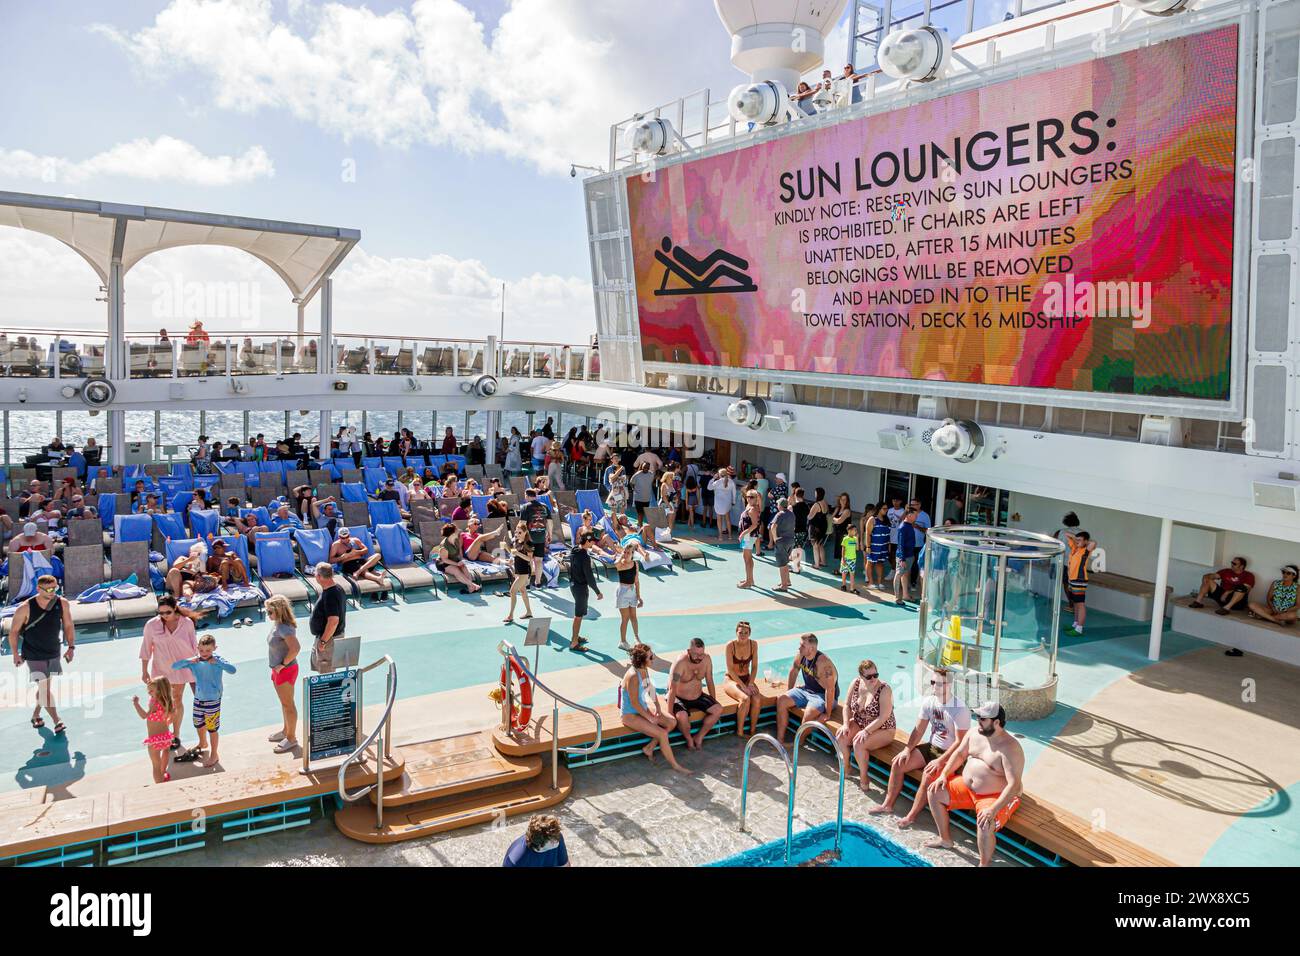 Miami Floride, PortMiami Port de Miami, à bord intérieur, navire Norwegian Joy Cruise Line, 7 jours Caraïbes, piscine, parc aquatique, salon de terrasse c Banque D'Images